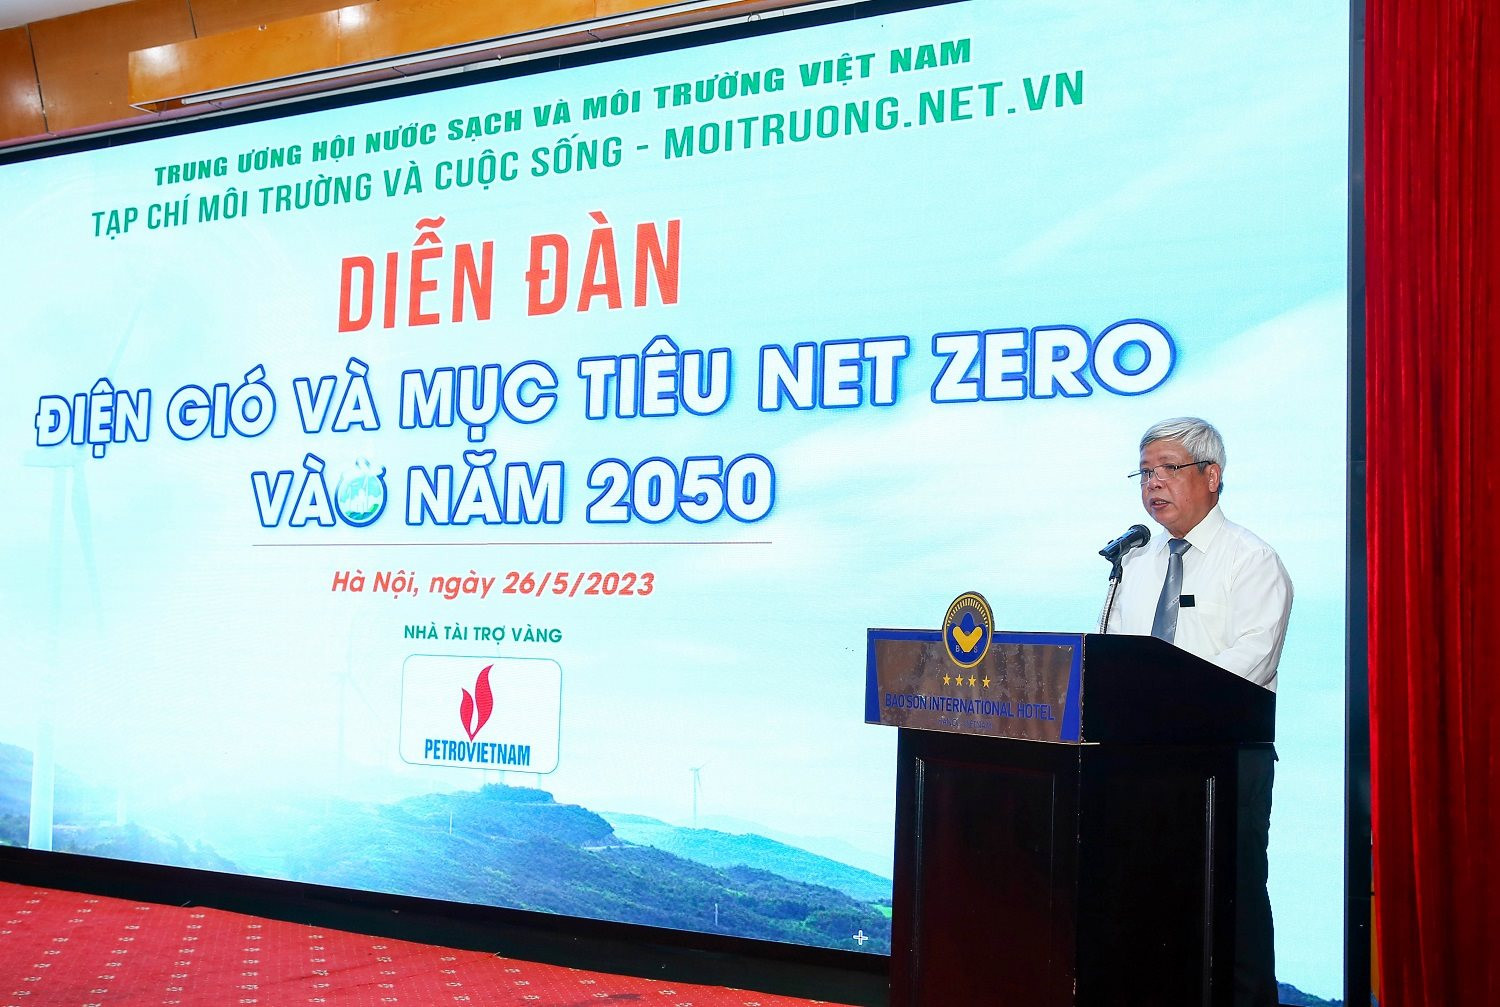 Phát triển điện gió hướng tới mục tiêu Net Zero vào năm 2050 - Ảnh 2.